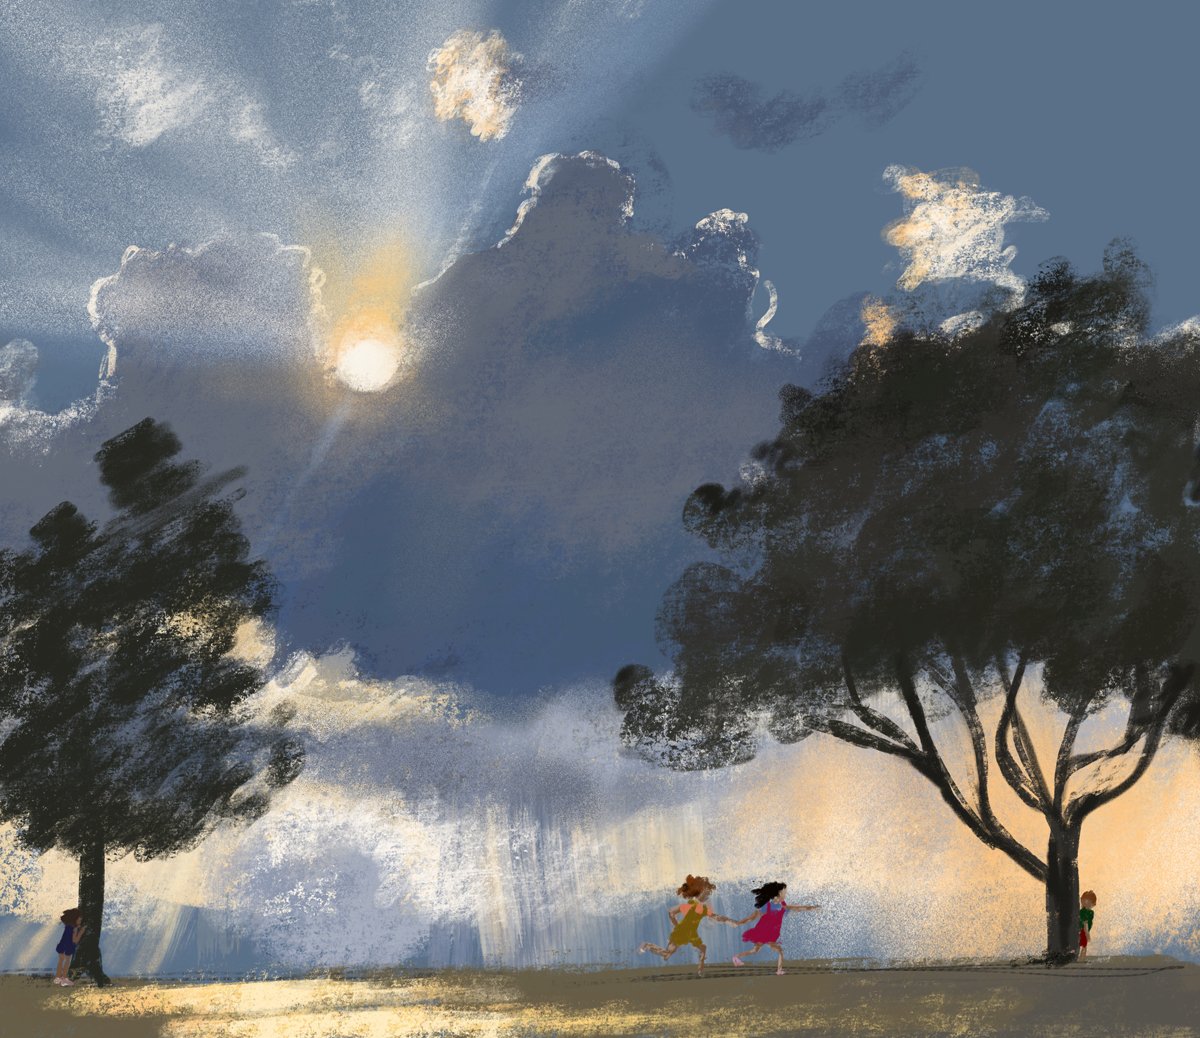 jenny-bloomfield-stormy-sky-illustration.jpg